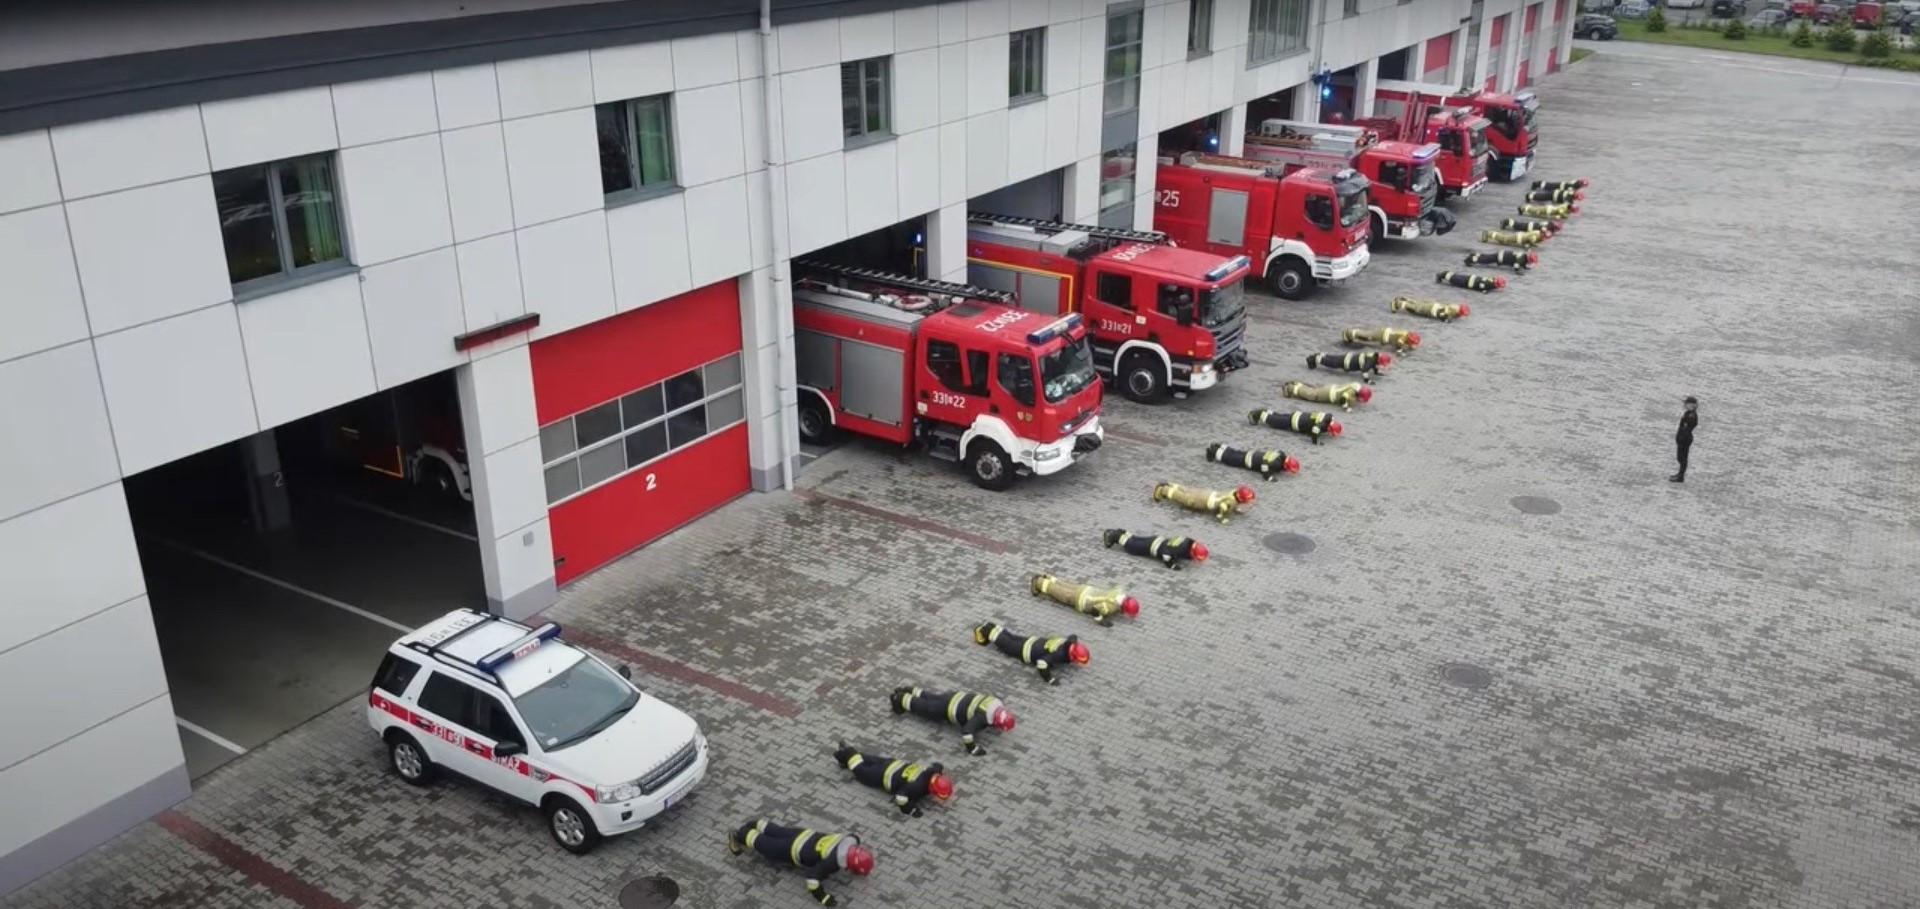 #GaszynChallenge w wykonaniu zawodowych strażaków z Bielska - Białej